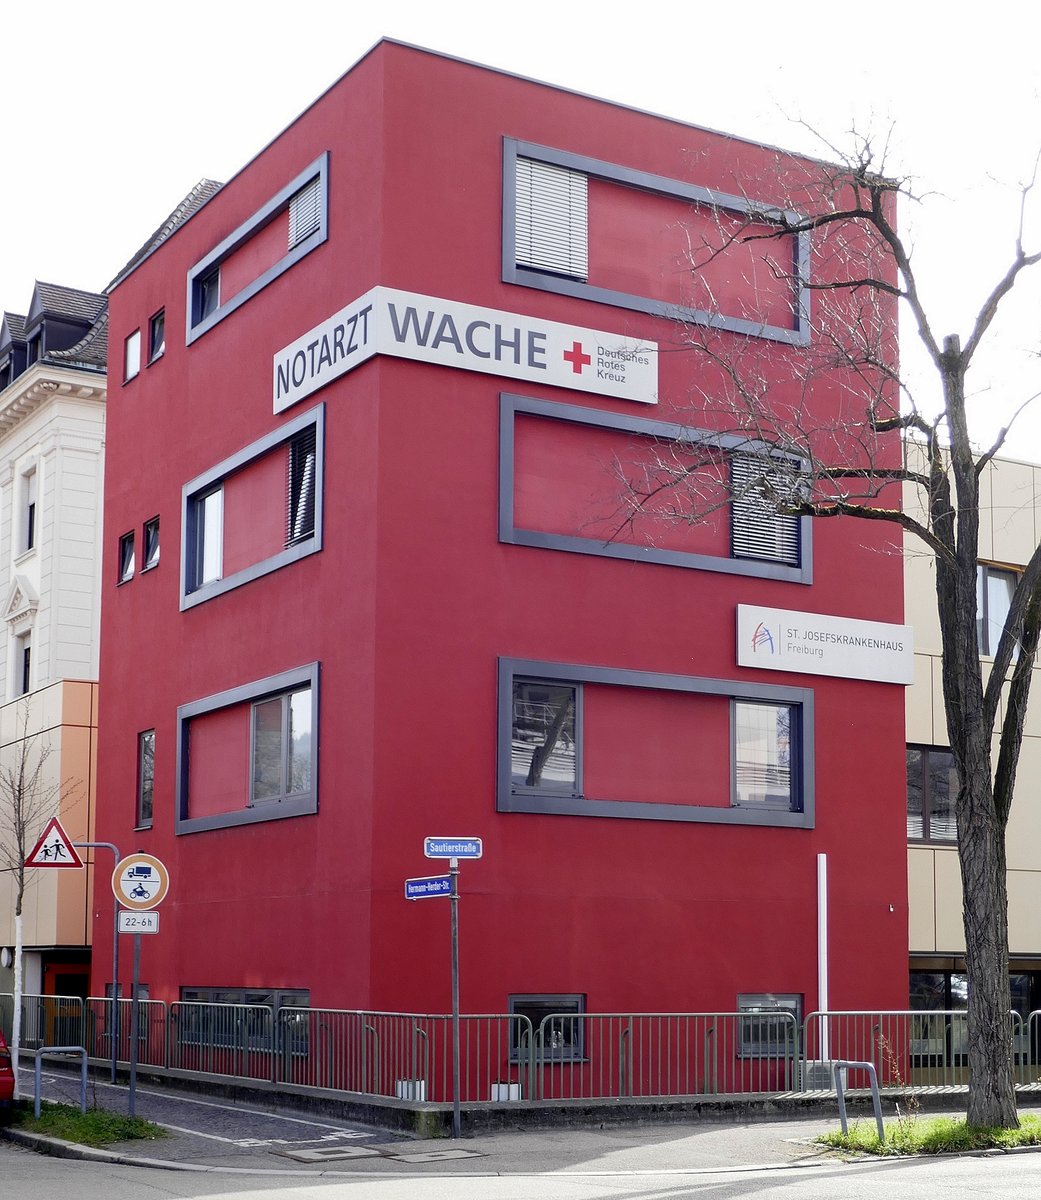 Freiburg, die Notarztwache am St.Josefskrankenhaus, Feb.2021